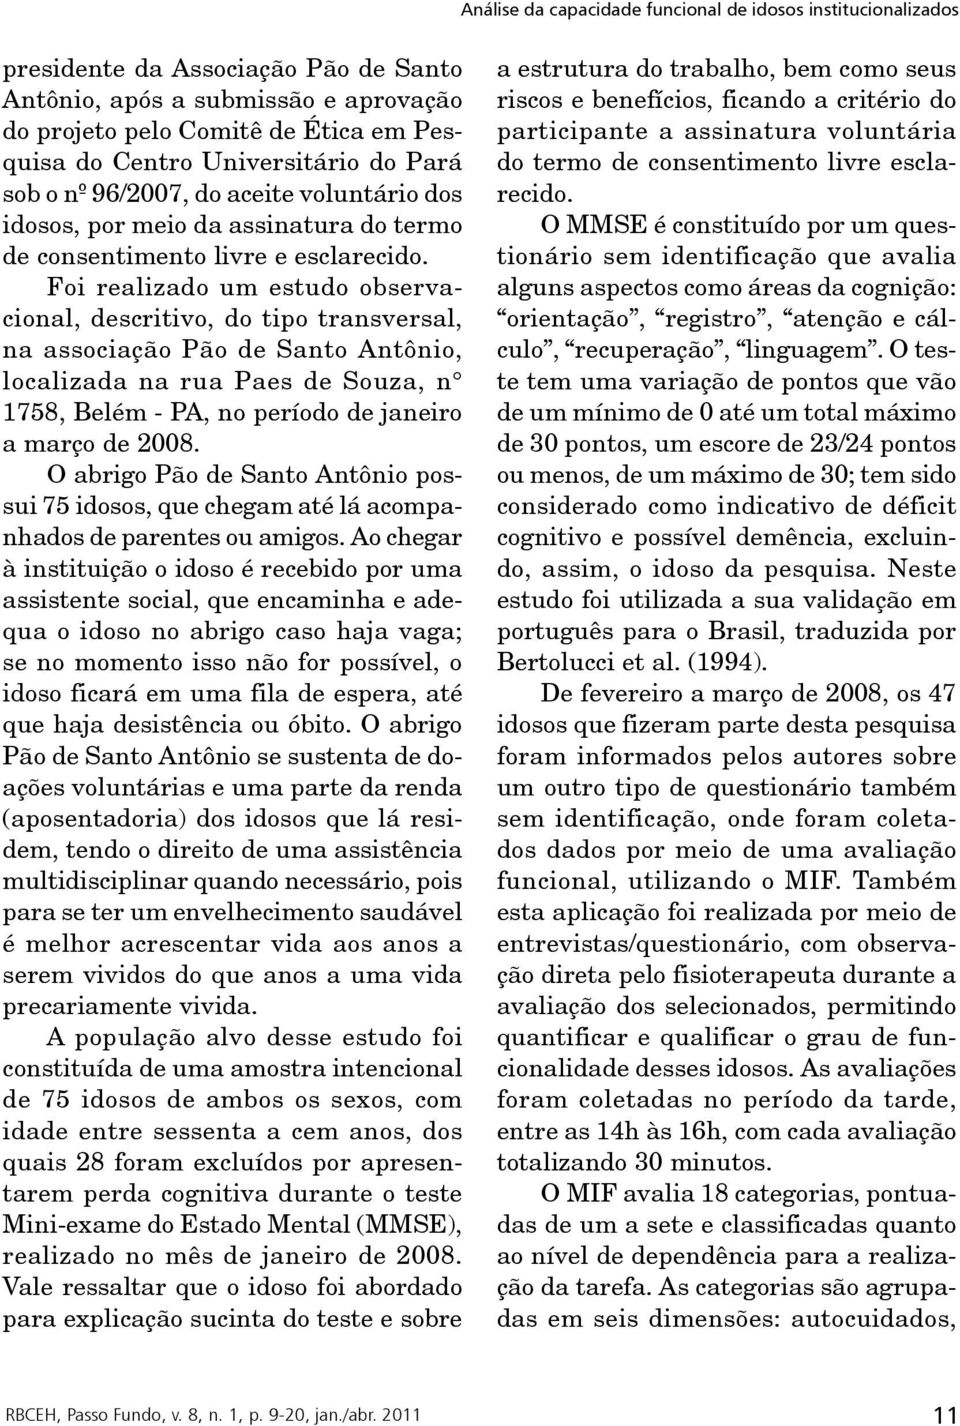 Foi realizado um estudo observacional, descritivo, do tipo transversal, na associação Pão de Santo Antônio, localizada na rua Paes de Souza, n 1758, Belém - PA, no período de janeiro a março de 2008.